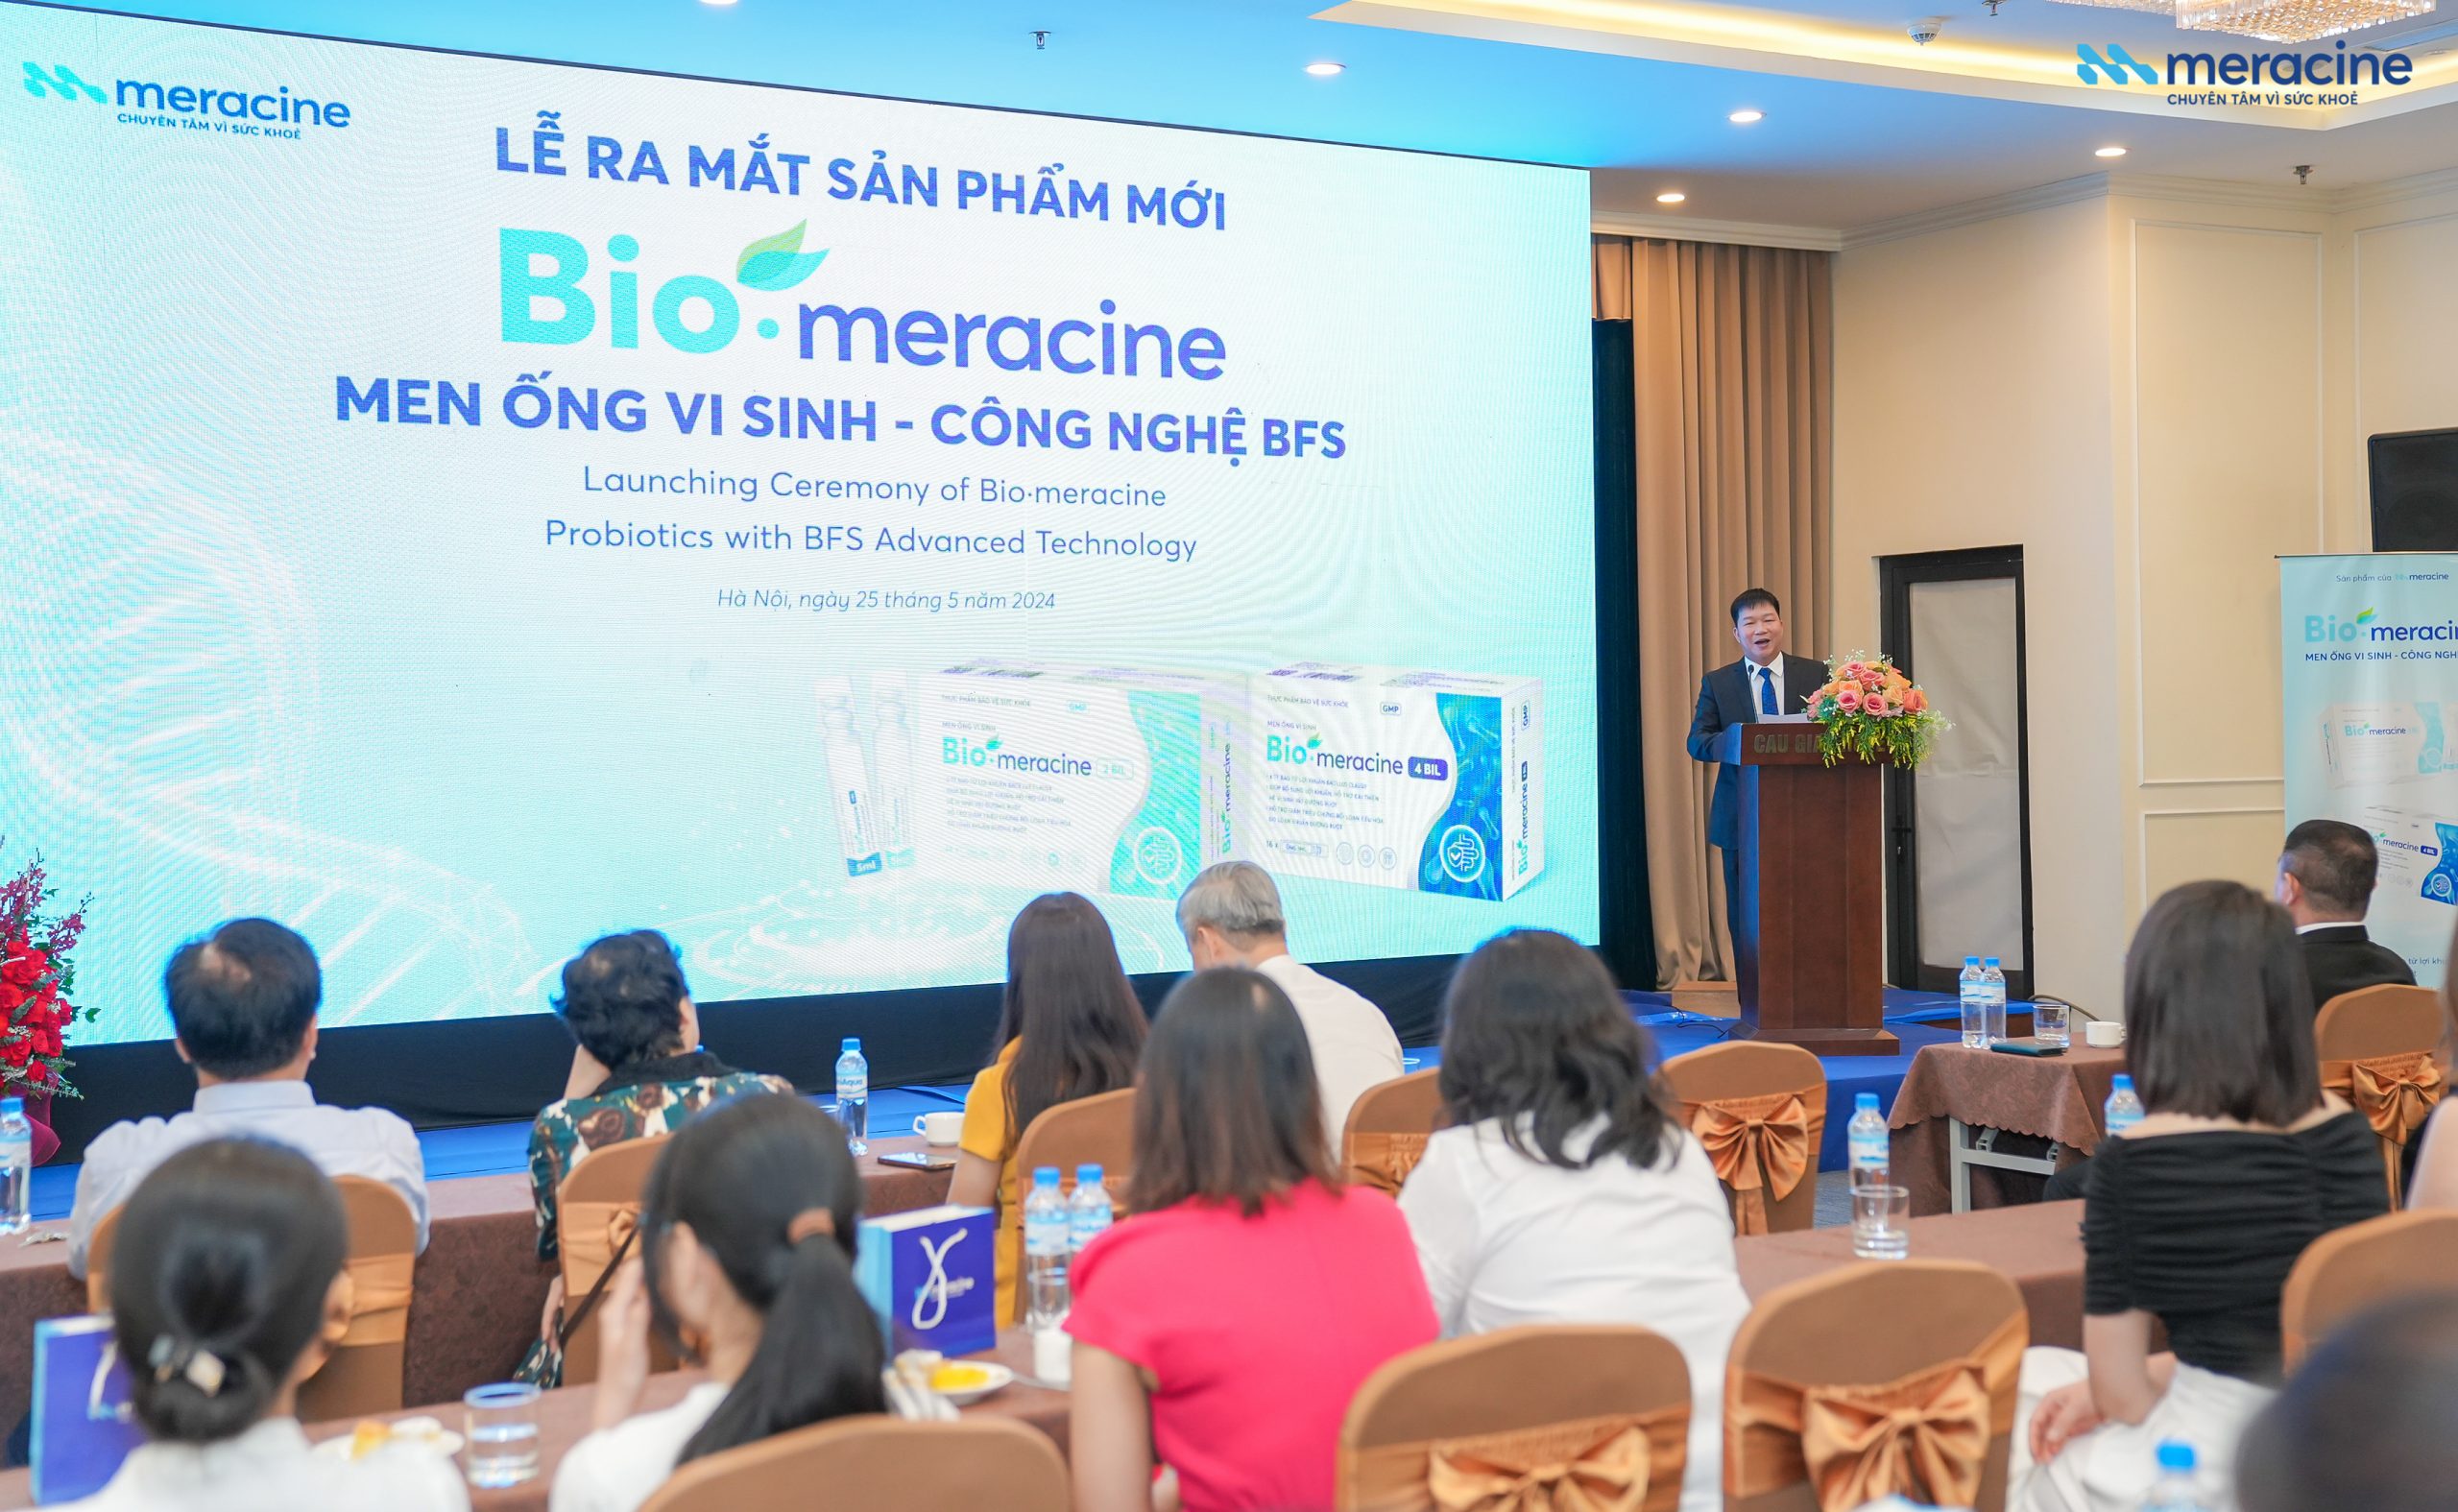 Dược phẩm Meracine công bố sản phẩm men ống vi sinh mới Bio-meracine